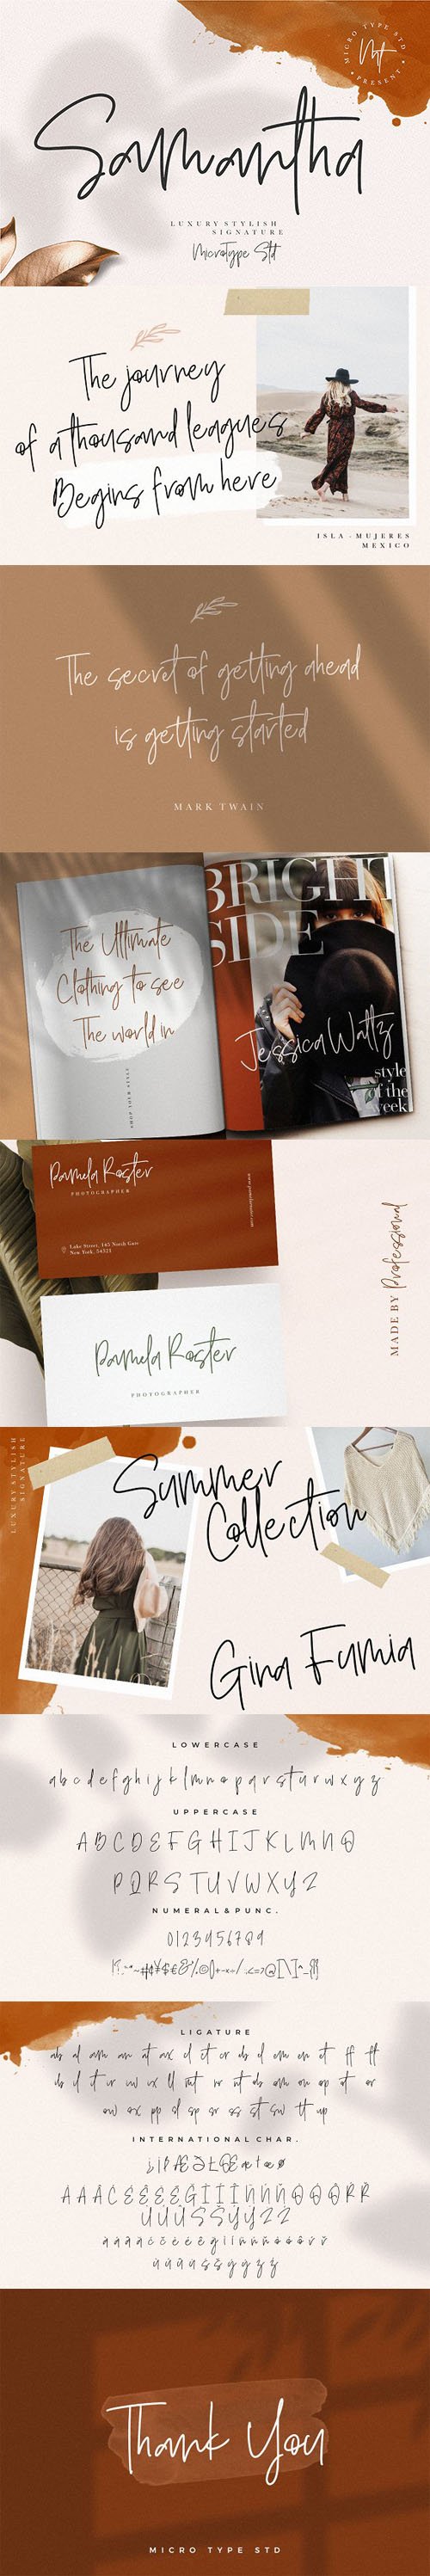 Samantha - Luxury Stylish Signature Font